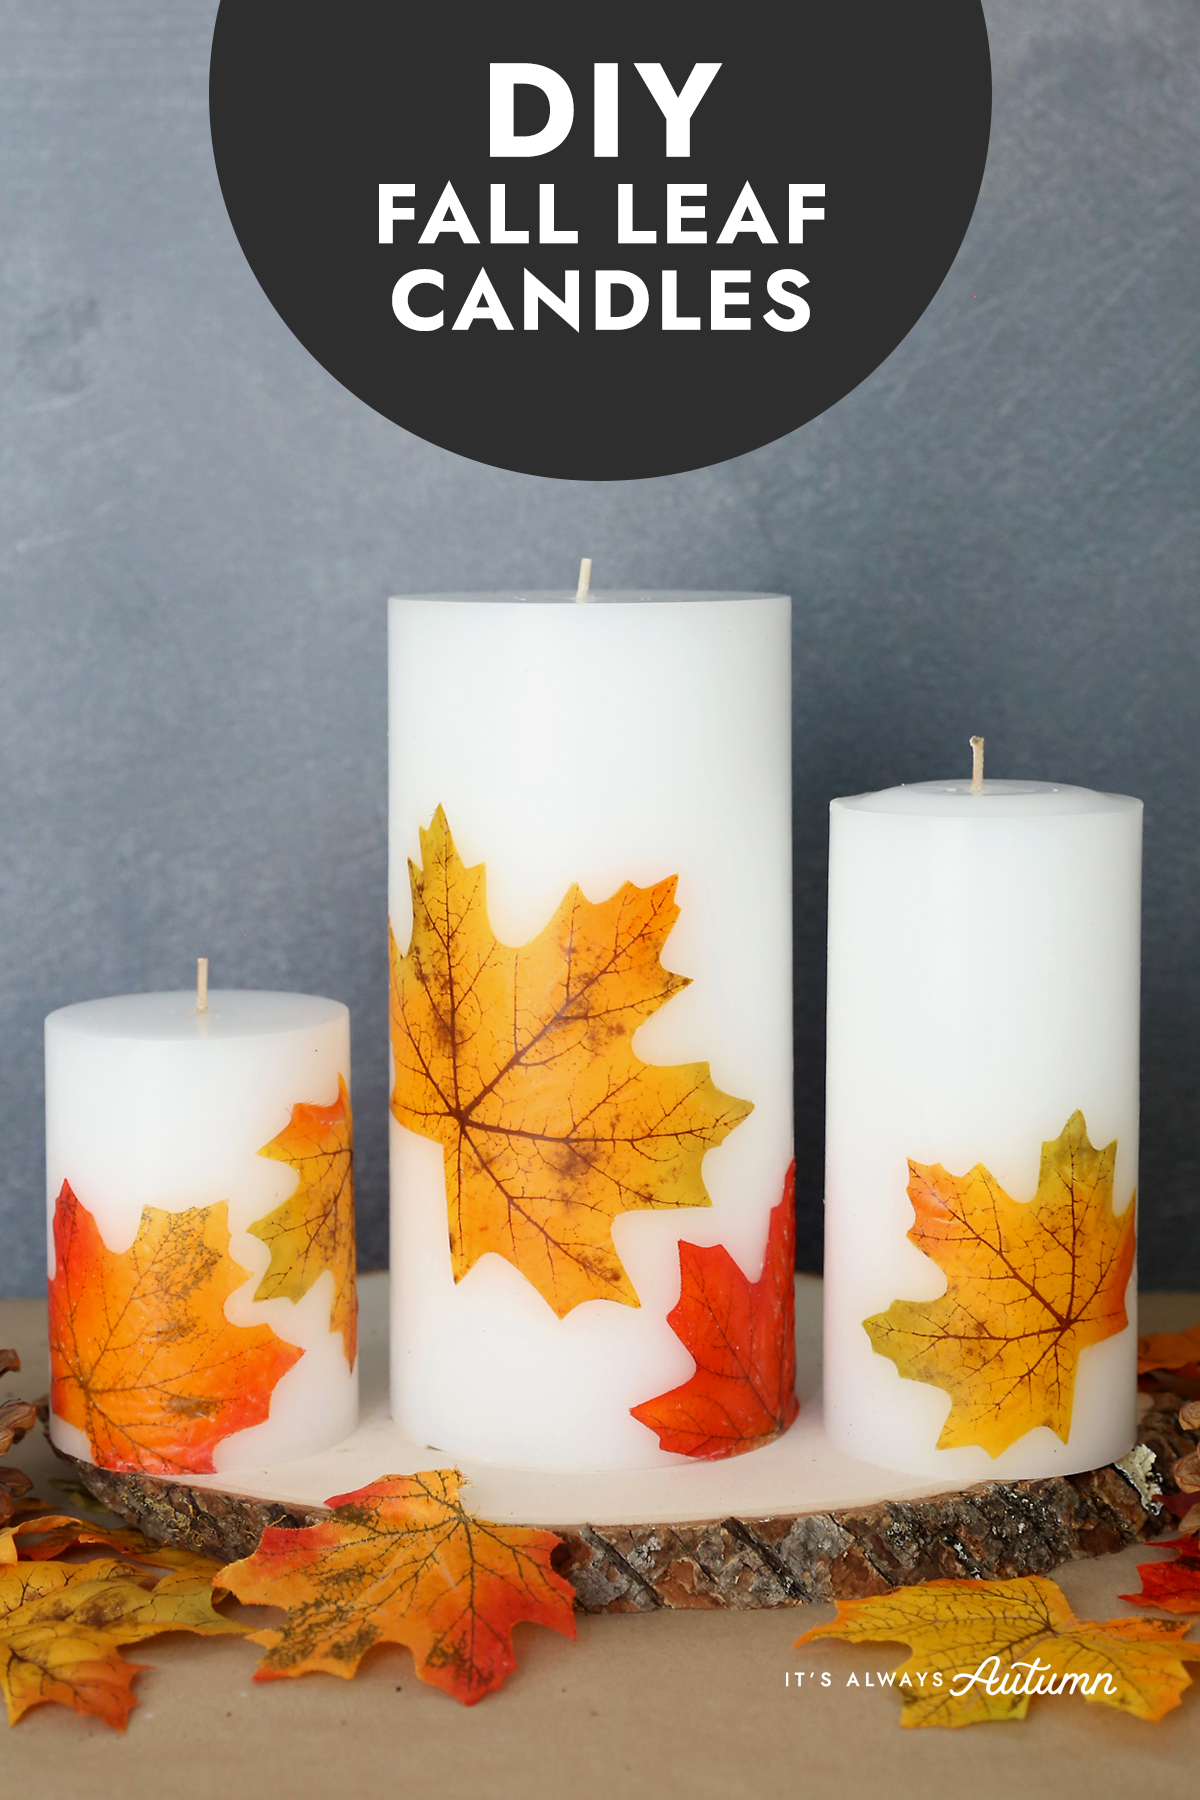 DIY Fall Leaf Candles - It's Always Autumn